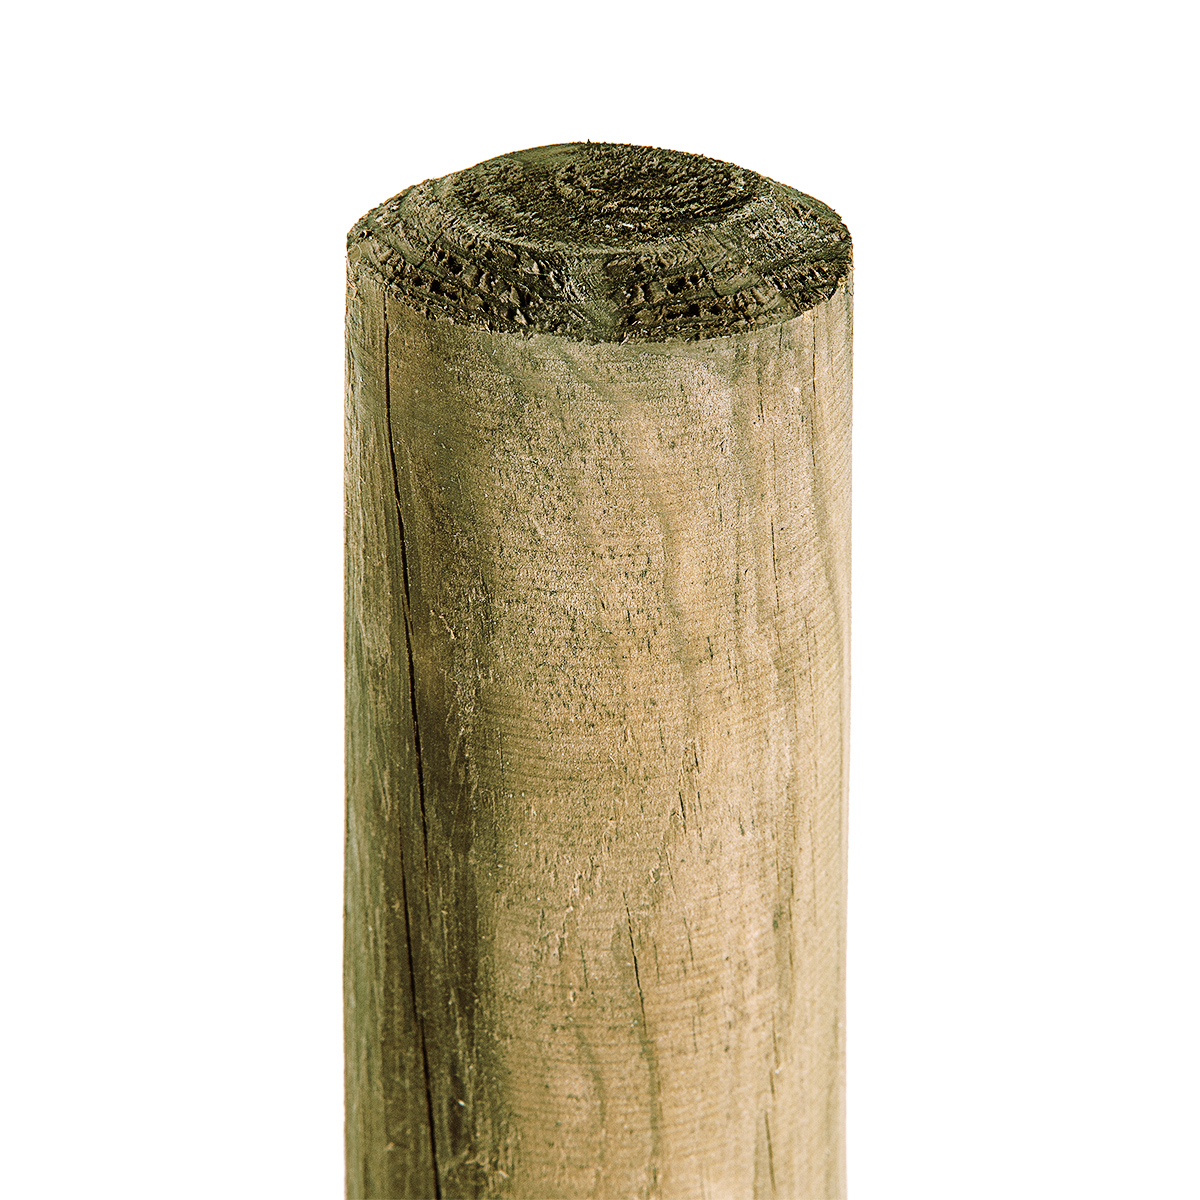 Holzpfahl 5cm Stärke x 125cm Höhe KDI-grün Pfahl Baumpfahl für Gartenzaun